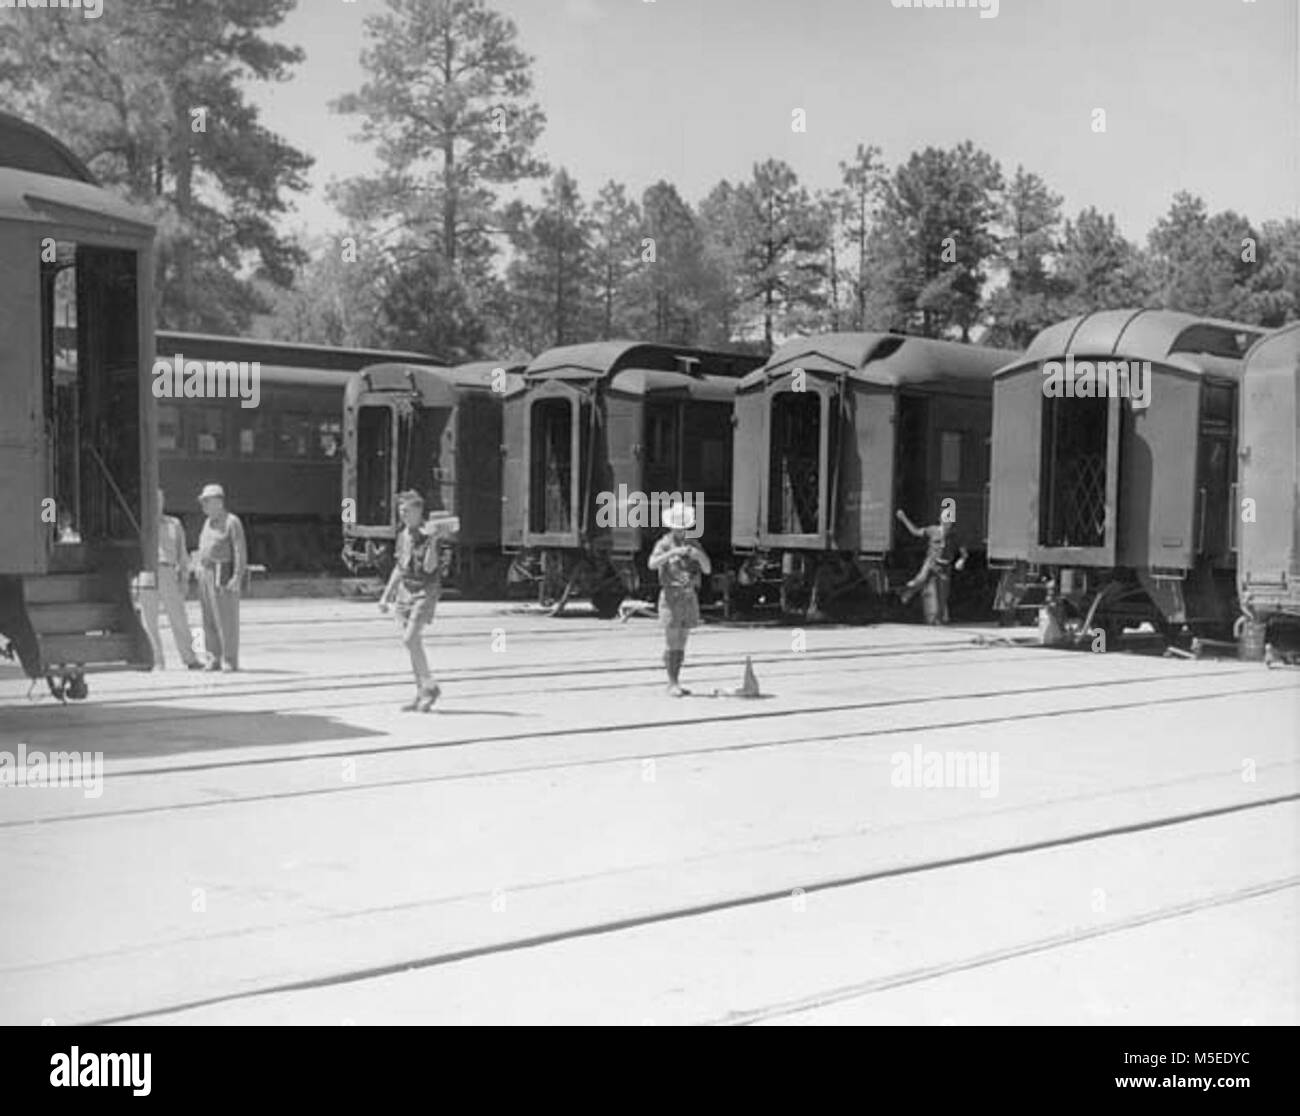 Grand Canyon Historic Railroad Depot 6 boy scout JAMBOREE TRENI SPECIALI IN CANTIERE IN DEPOSITO. Dettaglio - ESTREMITÀ DEI TRENI. Luglio 1953. , LEDING. Foto Stock